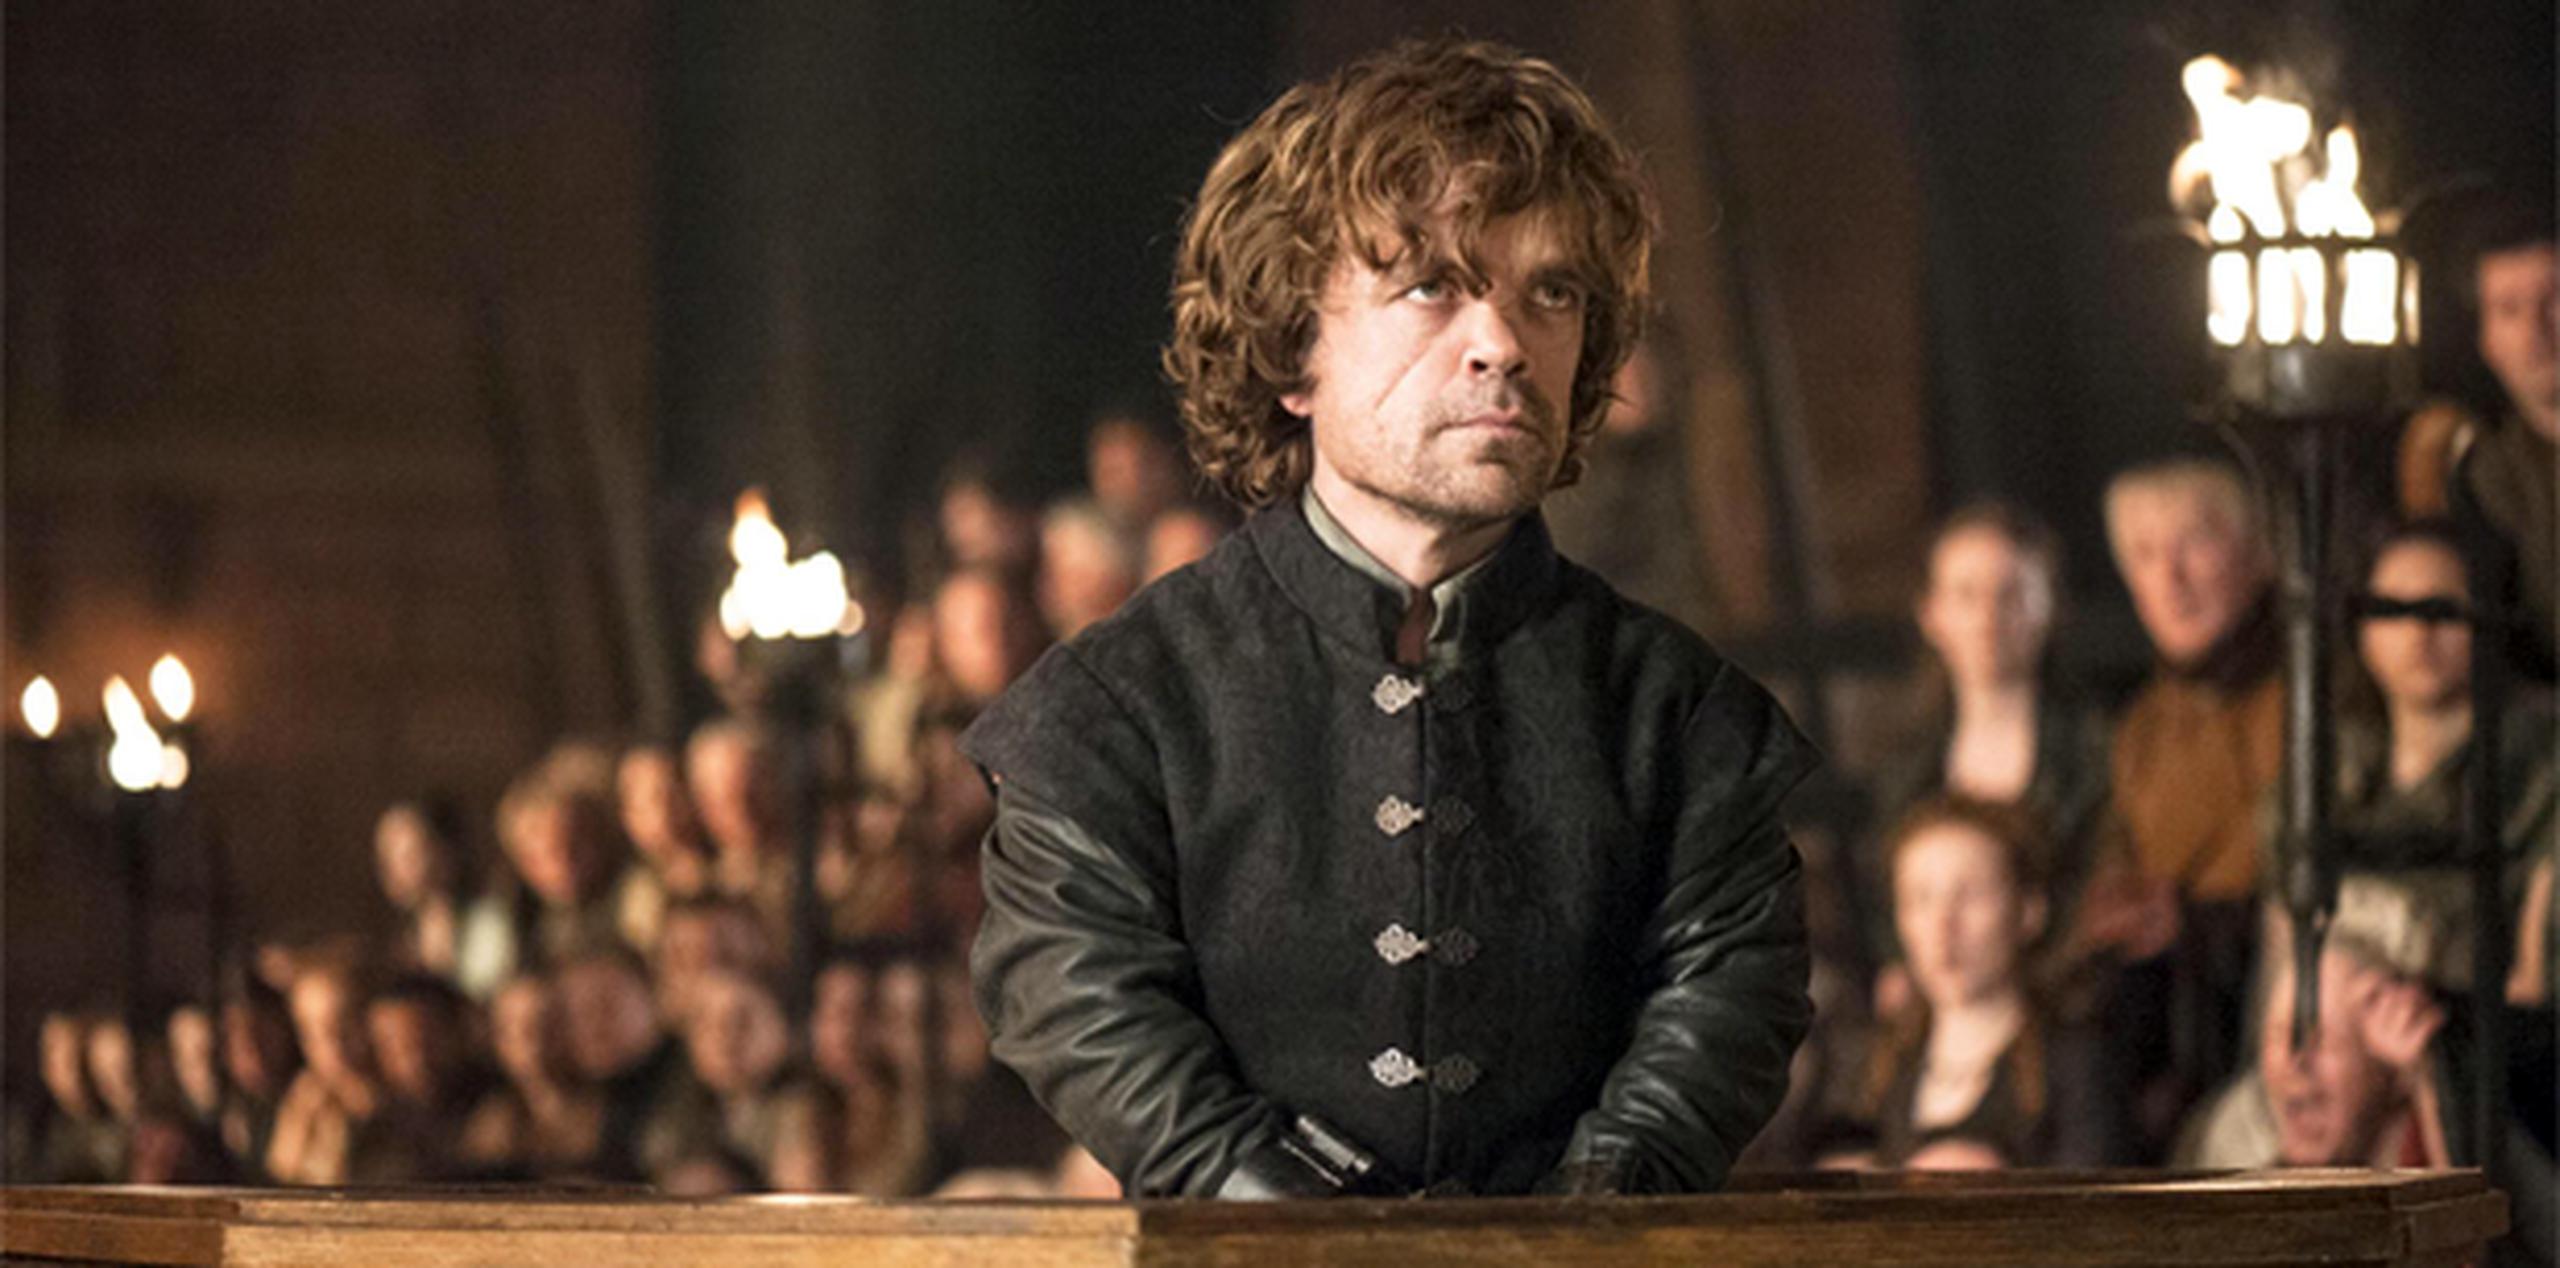 El episodio de anoche perteneció al actor Peter Dinklage -quien interpreta a "Tyrion Lannister"- en una de las escenas más memorables de la temporada hasta ahora.